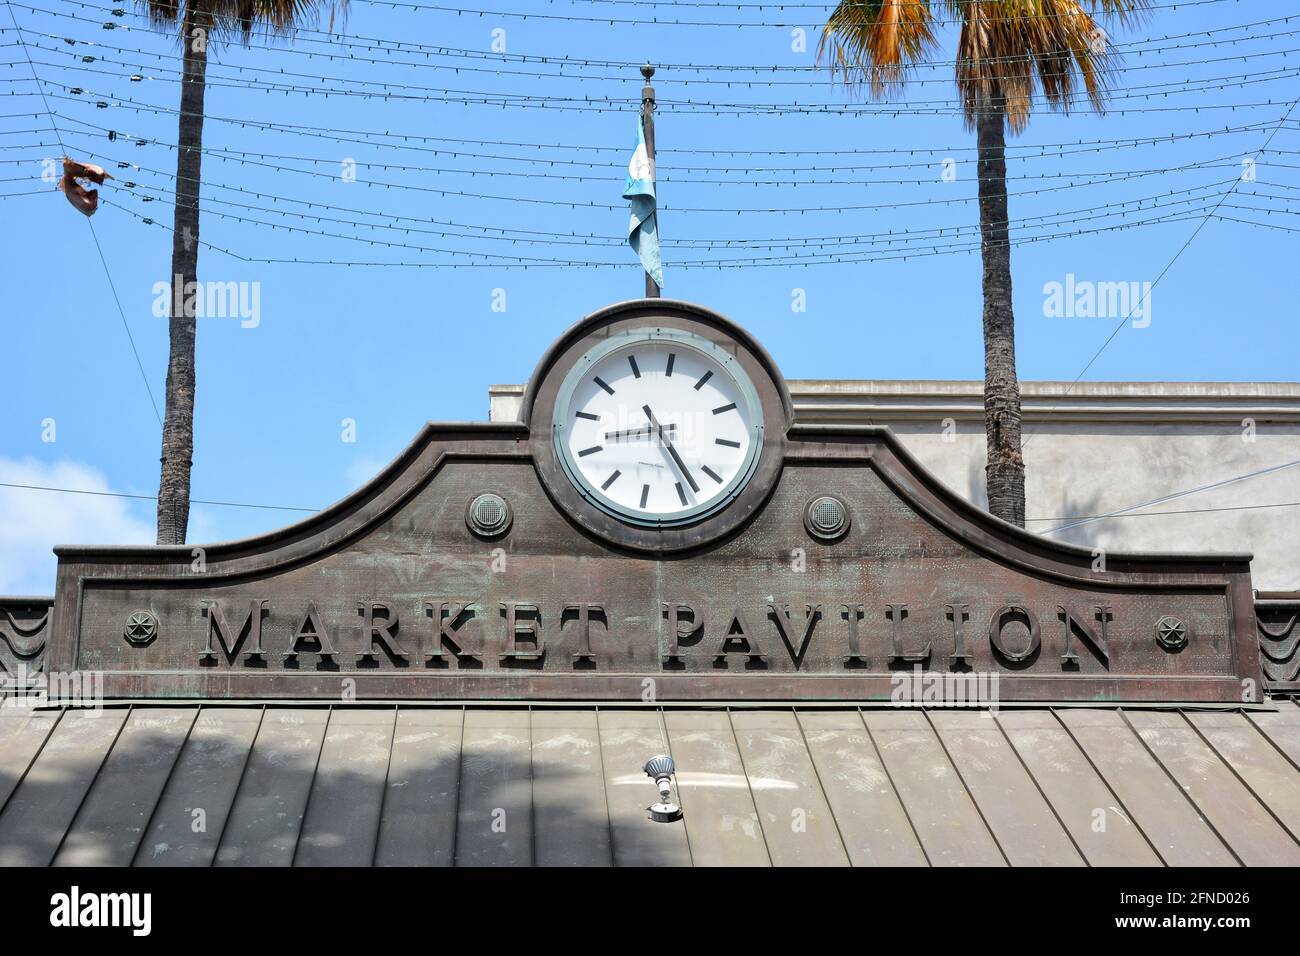 SANTA MONICA, CALIFORNIE - 15 MAI 2021 : panneau du pavillon du marché et horloge le long de la promenade de la troisième rue. Banque D'Images